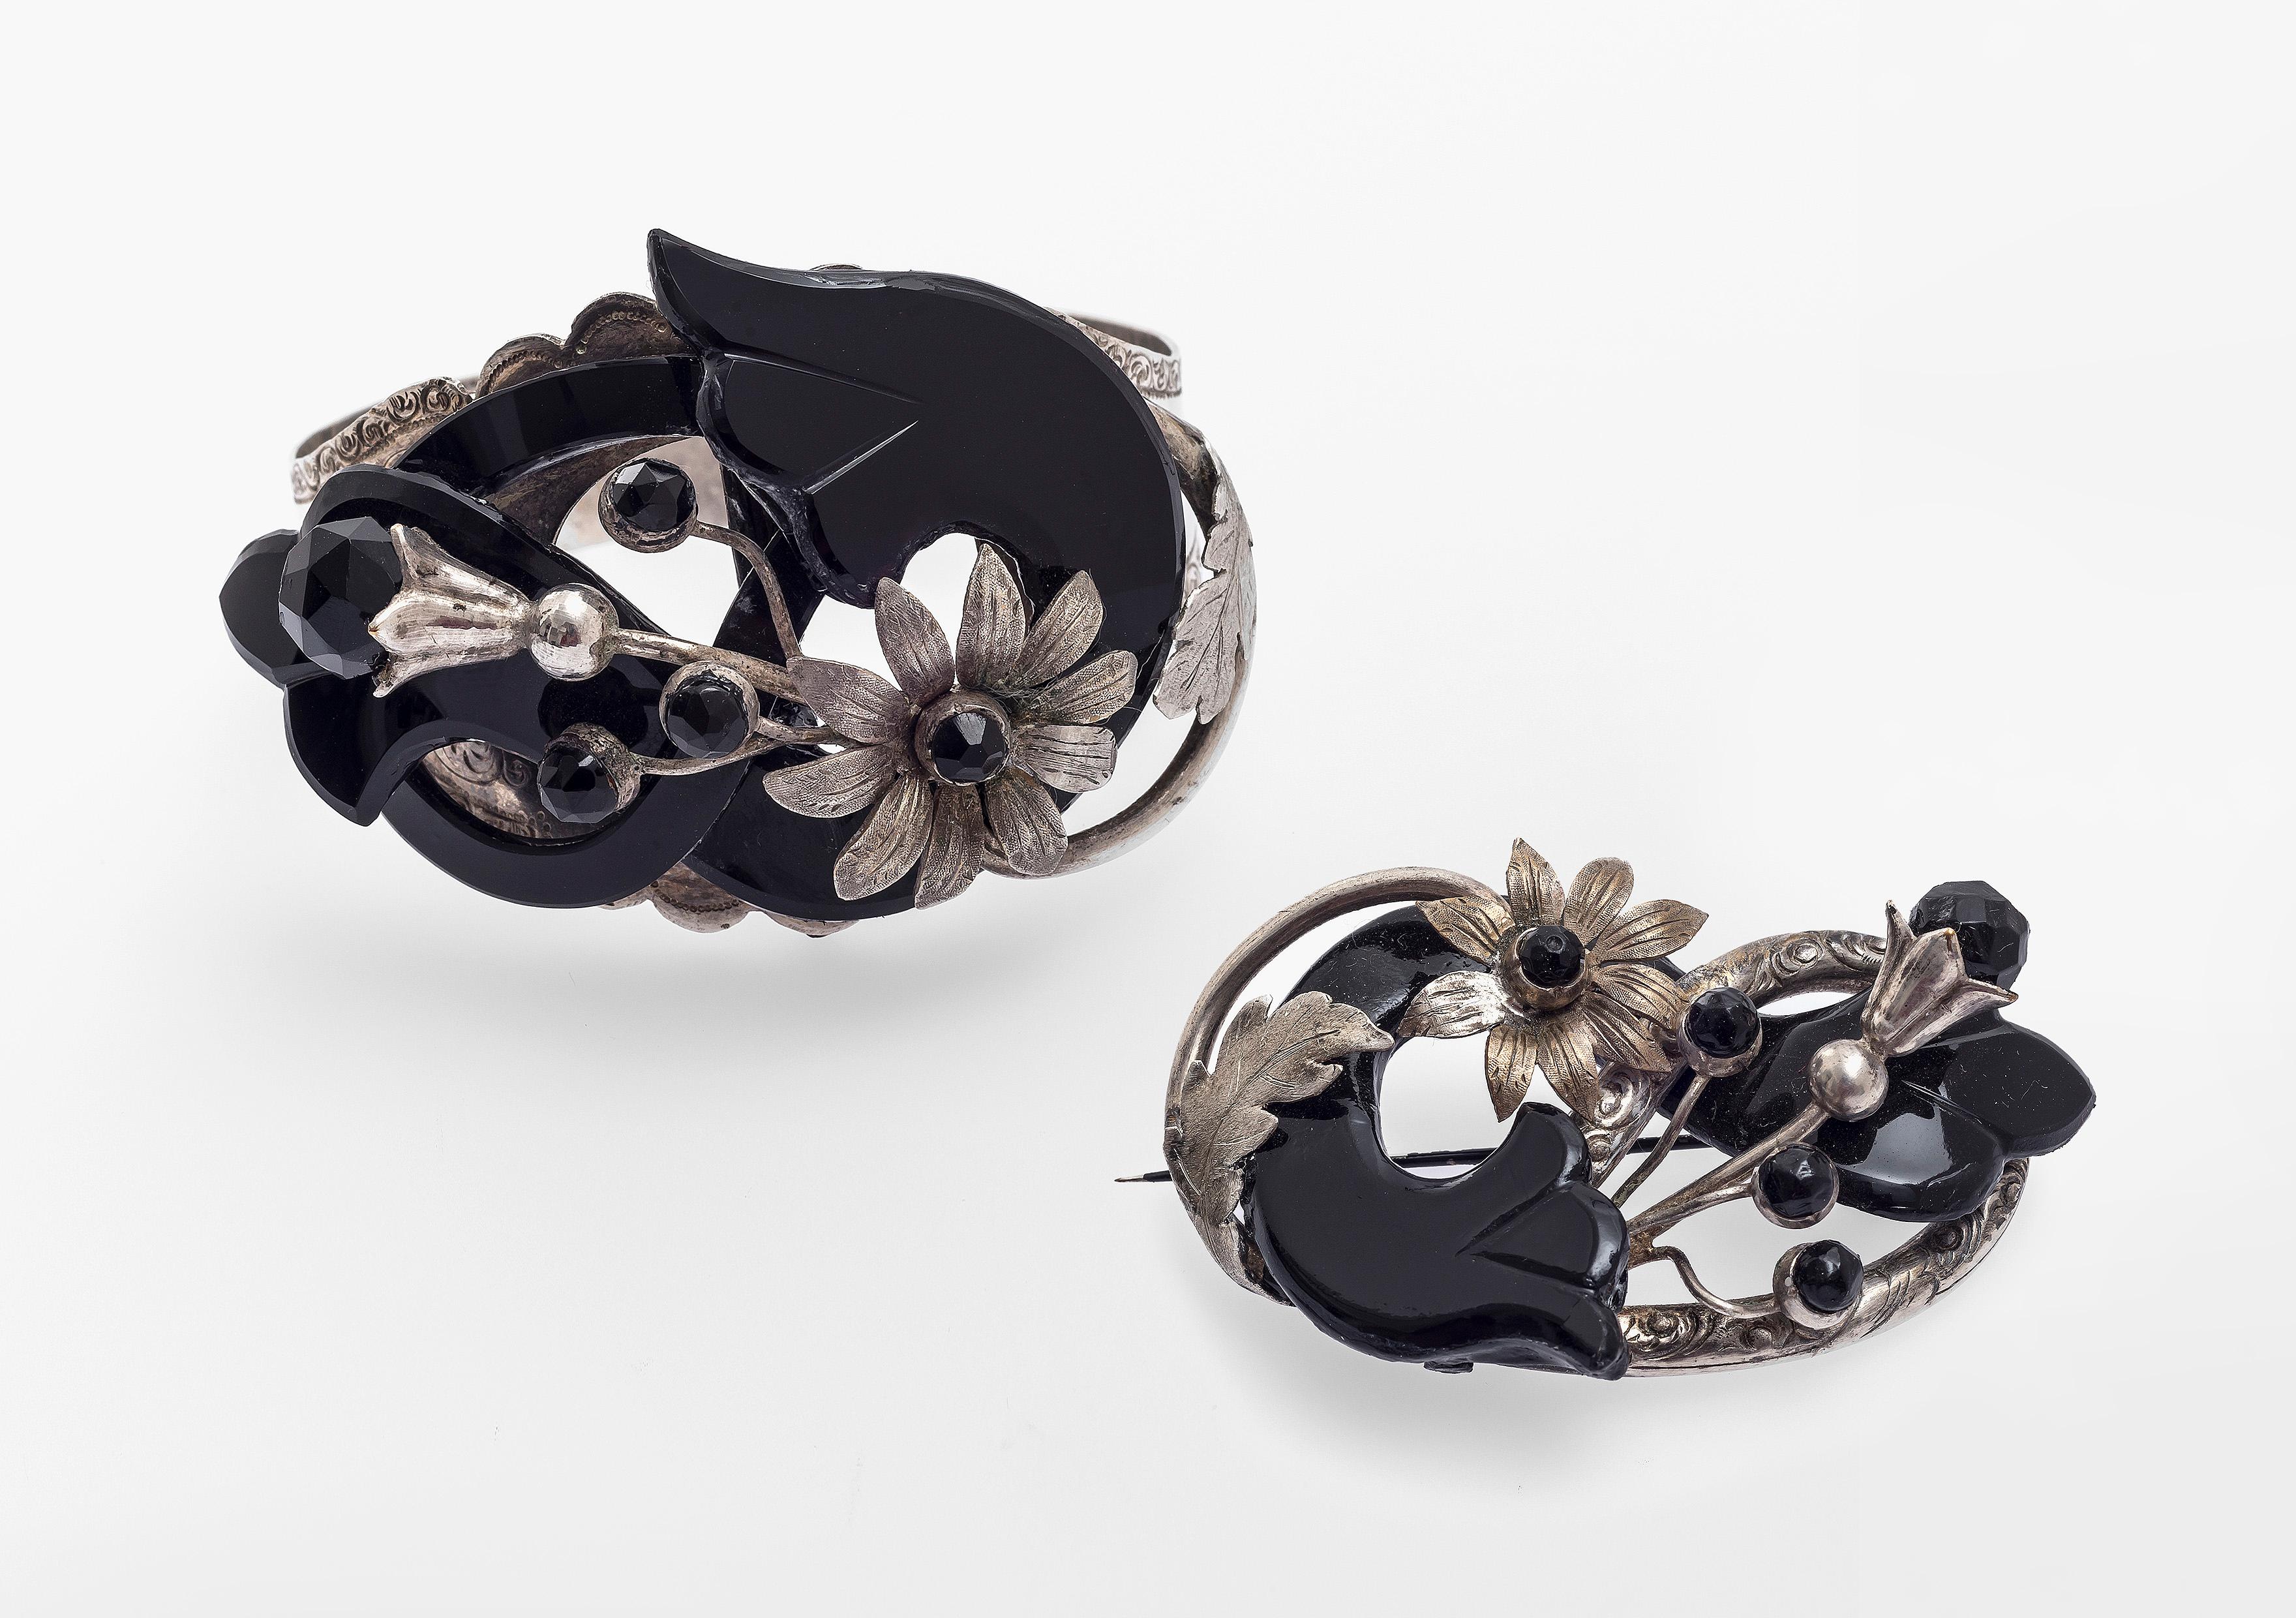 Sehr stilvolles Armband mit passender Brosche aus Silber und Onyx in der Originalschatulle. das Design der Demi Parure zeigt verschiedene Arten von Blumen, Blütenknospen und Blättern, ausgeführt in geschnitztem Onyx und montiert in fein graviertem